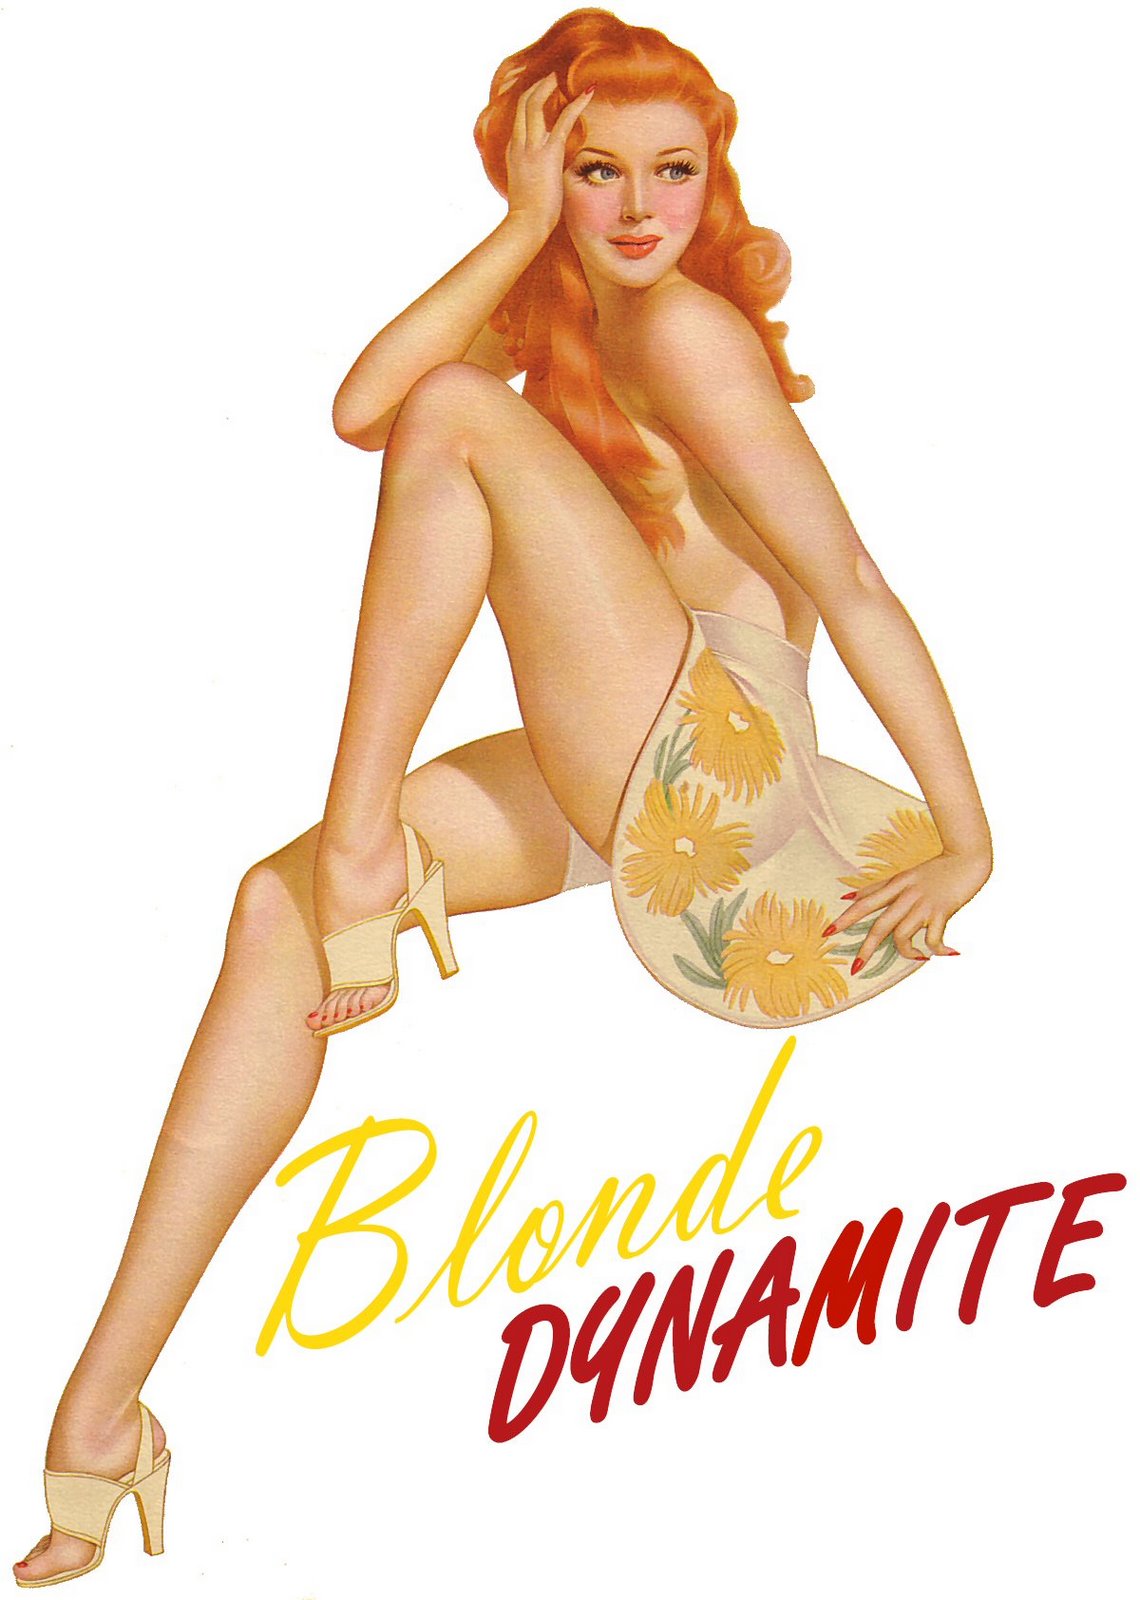 [Blonde_Dynamite_Sample.jpg]